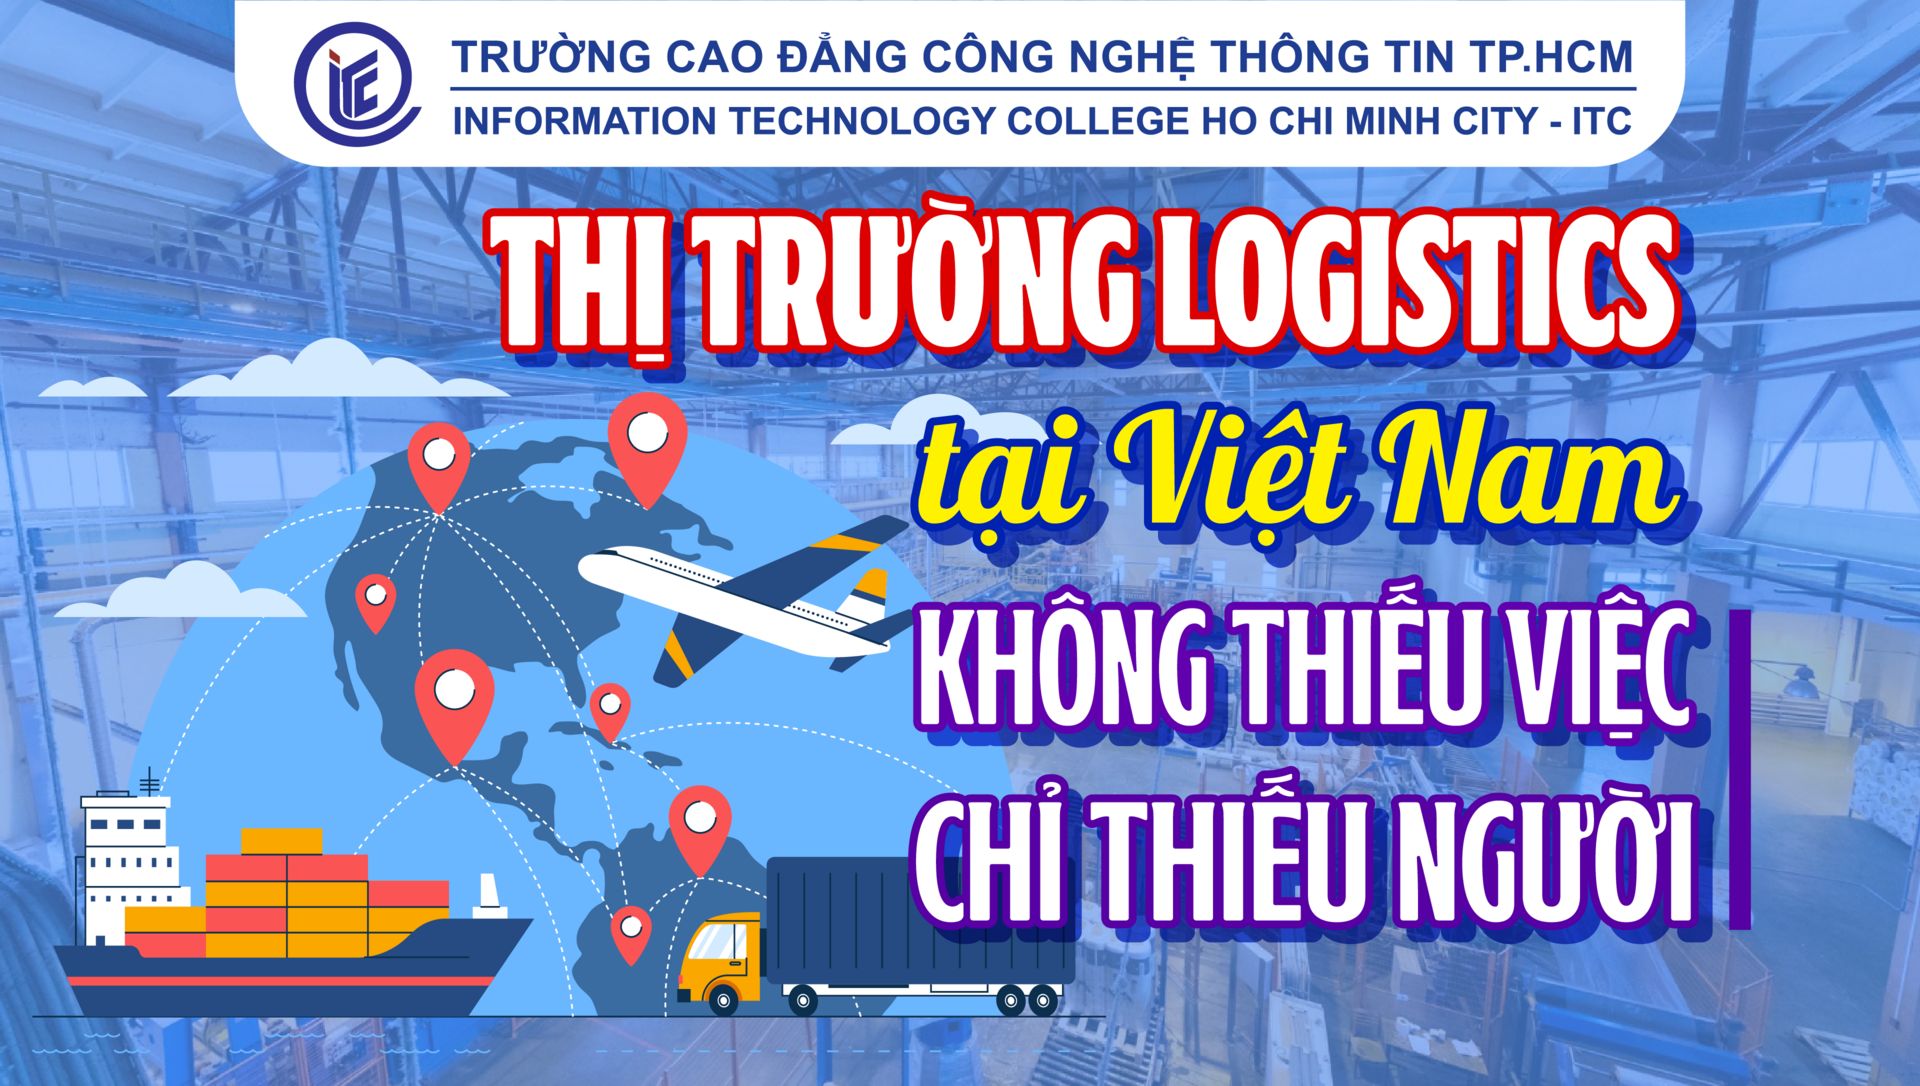 Thị trường Logistics tại Việt Nam không thiếu việc chỉ thiếu người